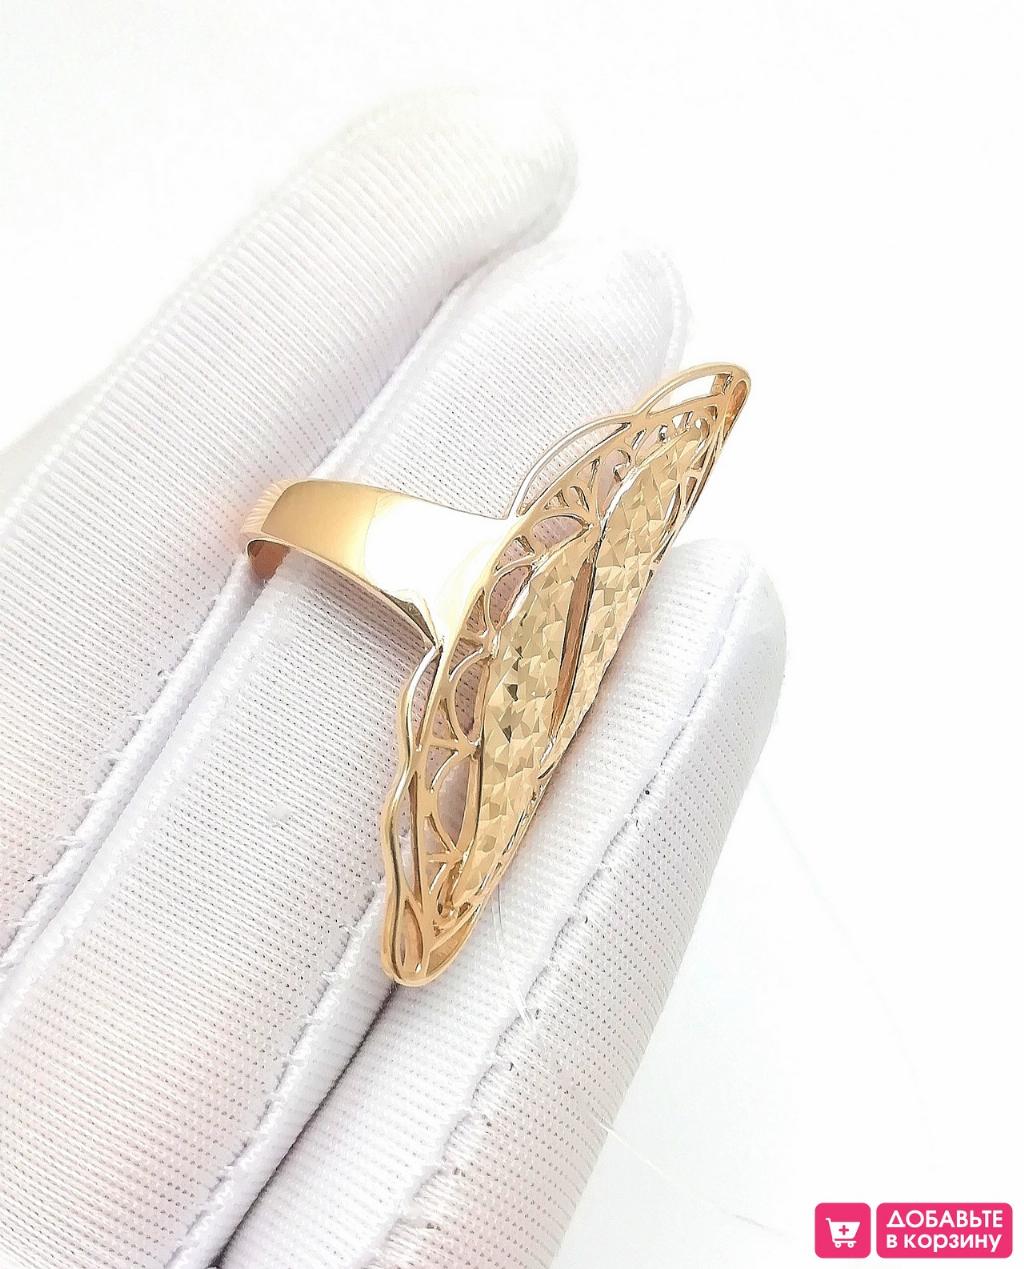 Золотое кольцо крупное